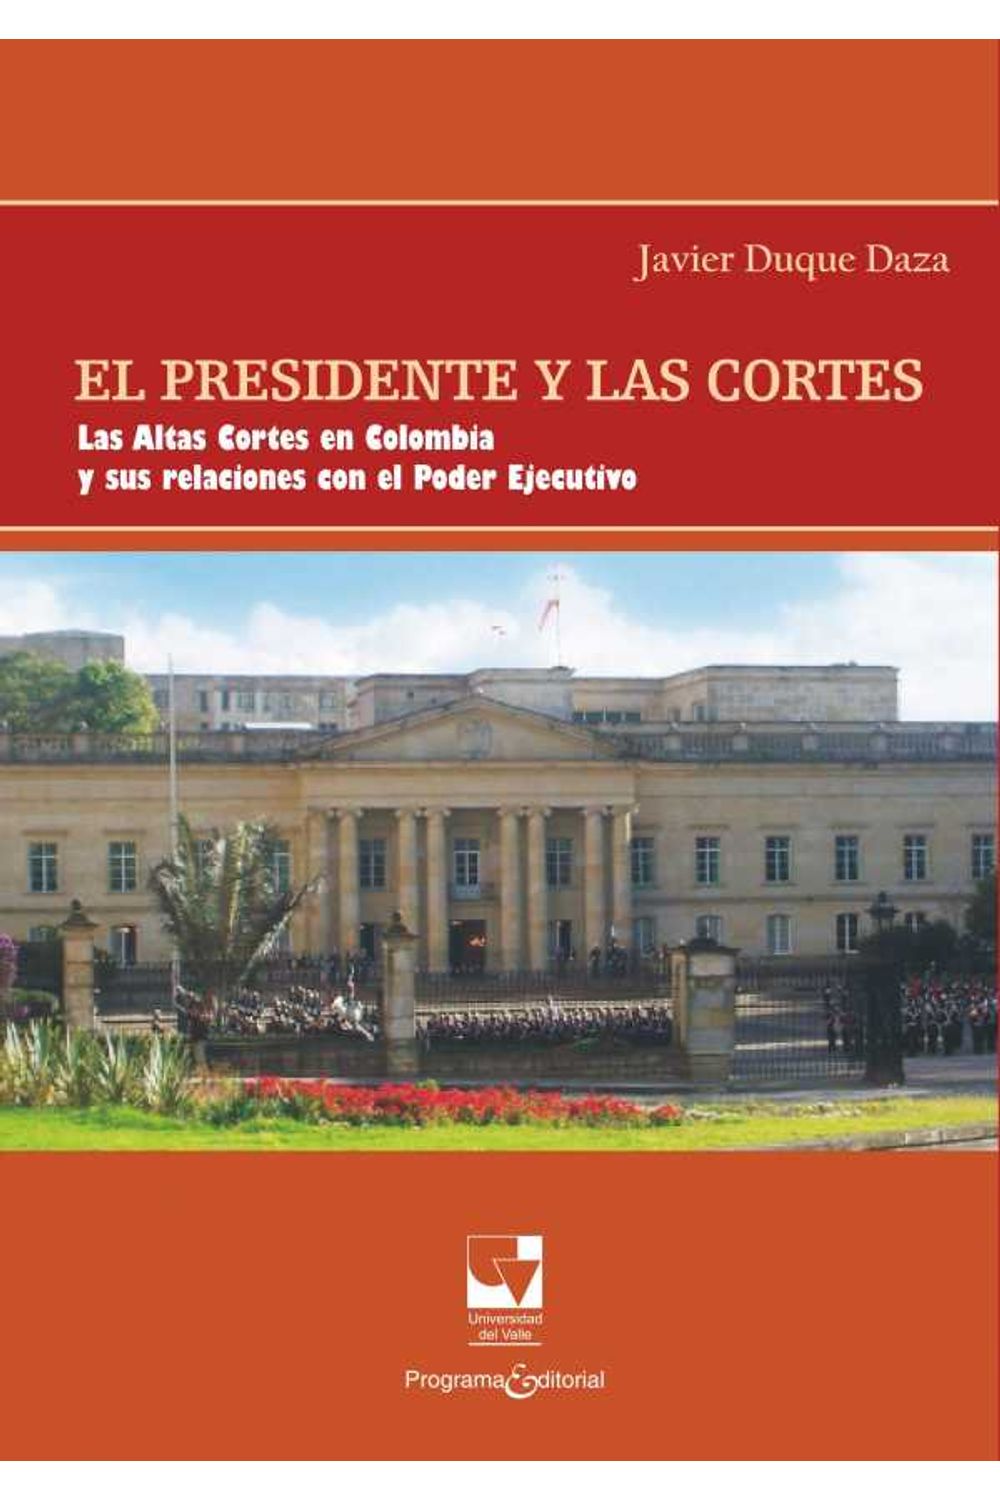 bw-el-presidente-y-las-cortes-programa-editorial-universidad-del-valle-9789585164390